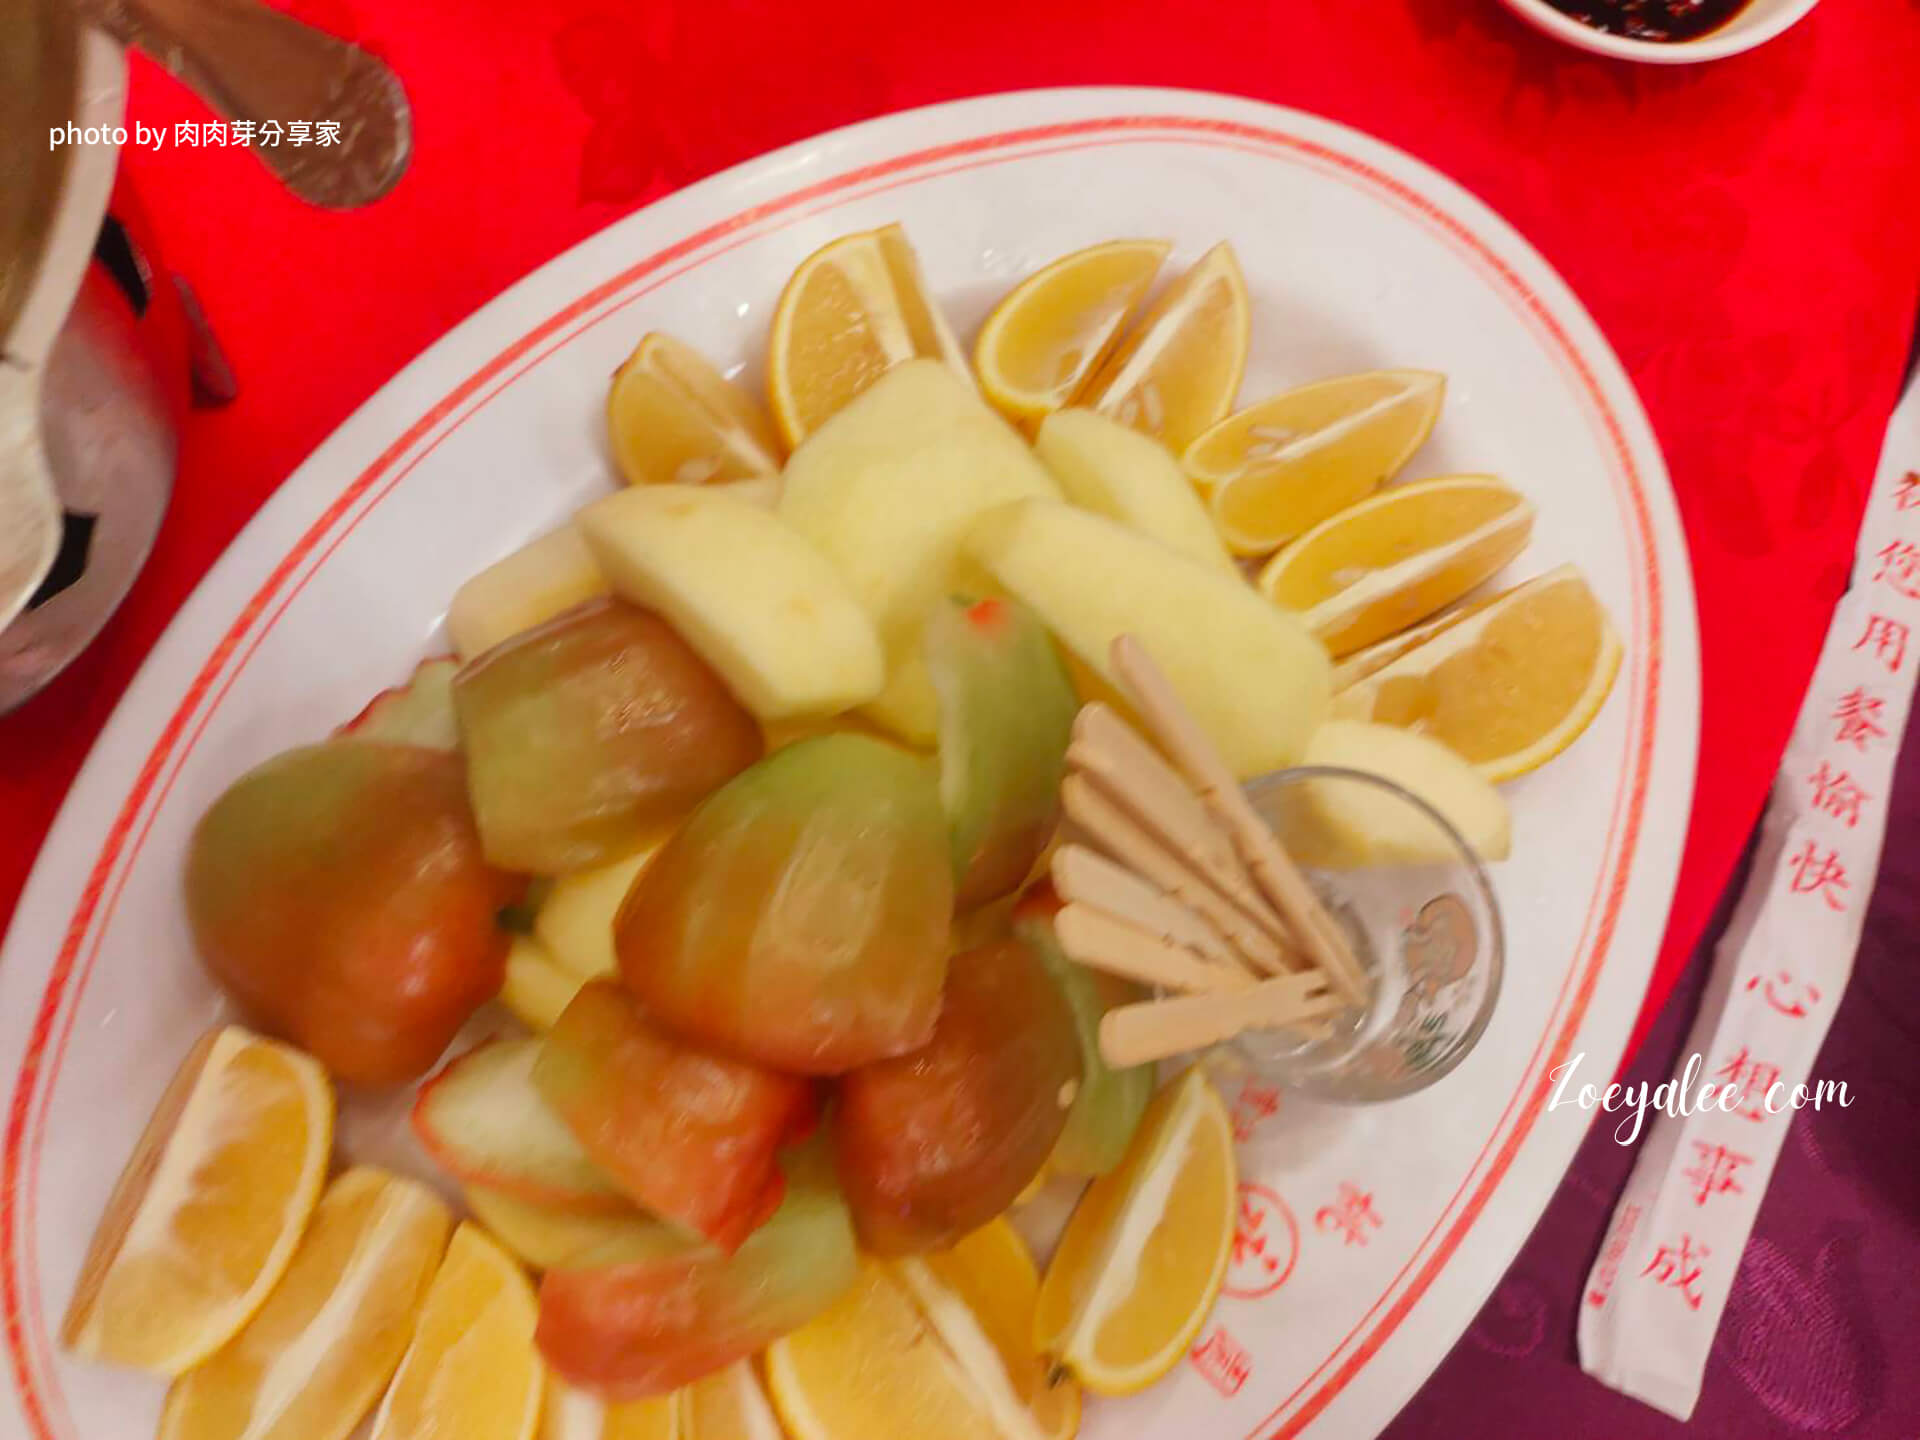 桃園八德,項目包含喜宴,聚餐,外燴的餐廳-上海怹餐廳餐點水果